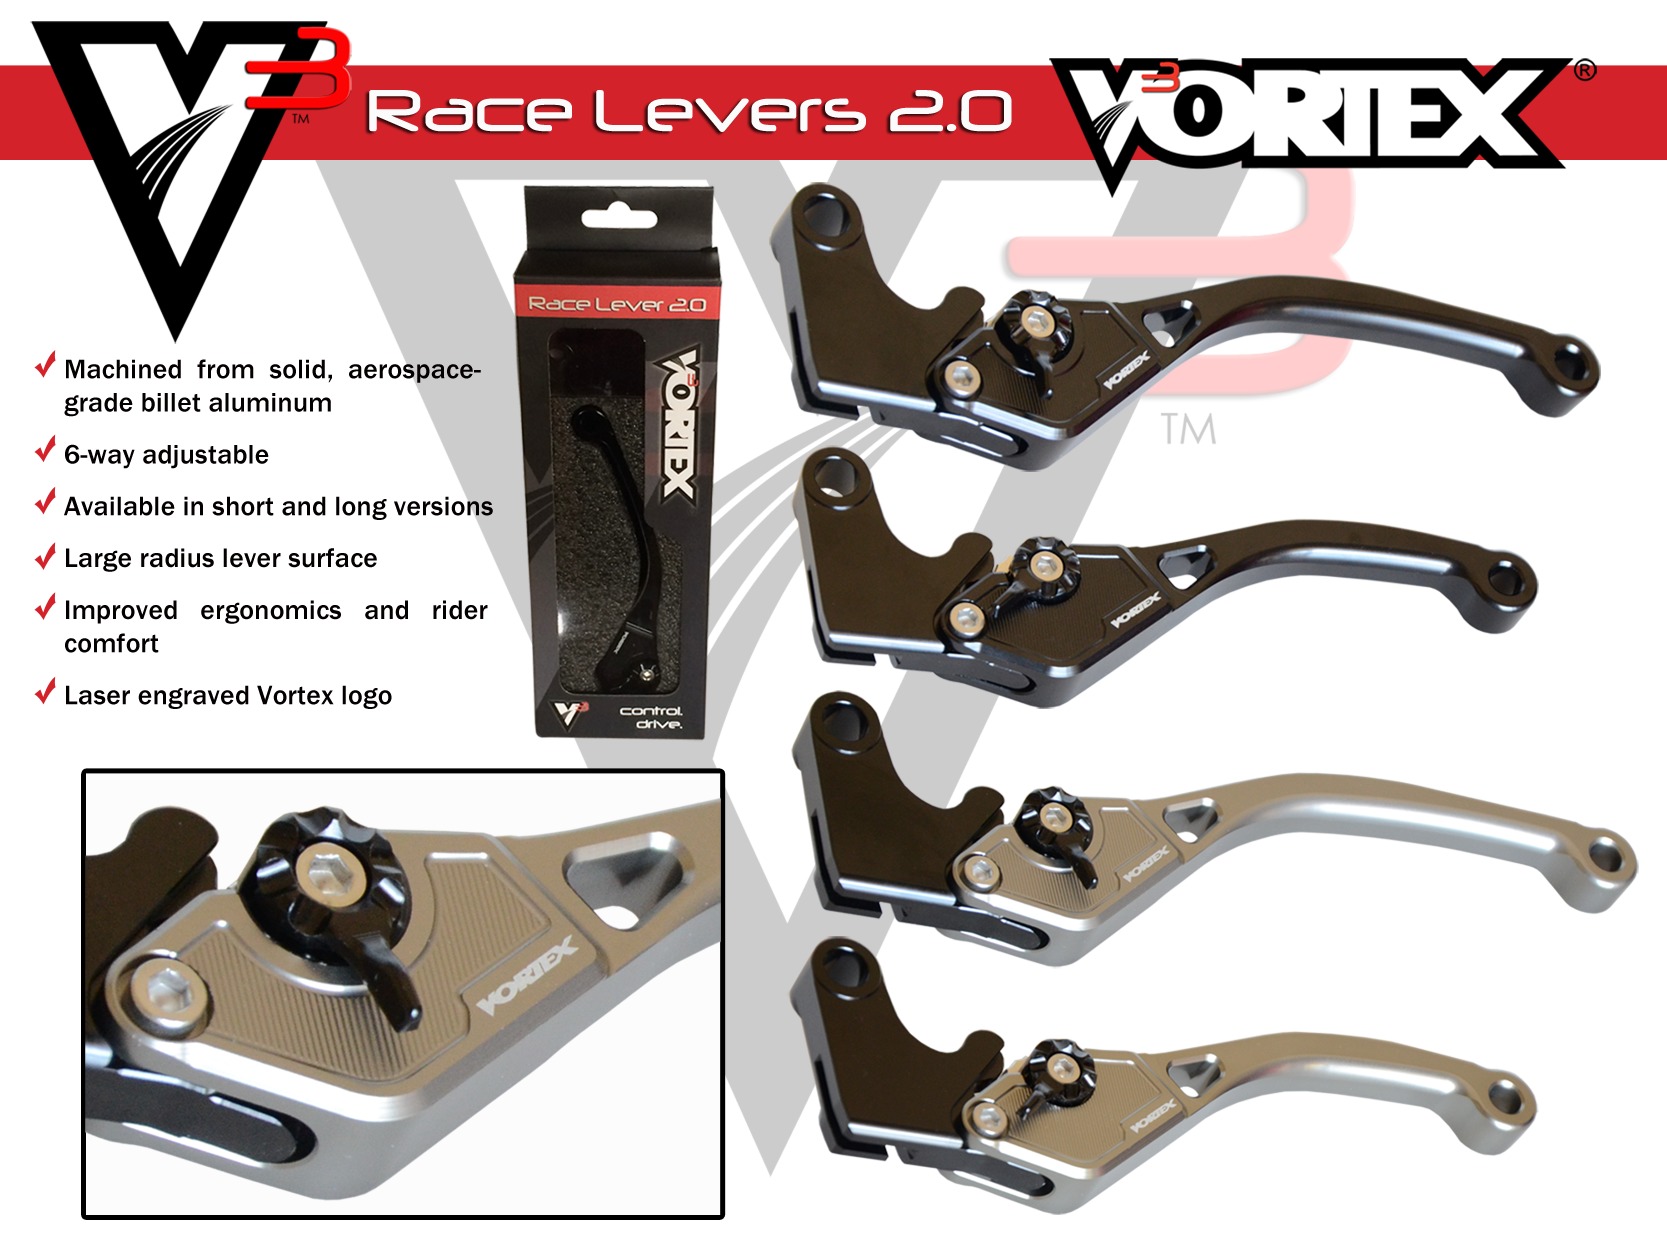 V3 2.0 Black Stock Length Clutch Lever - For Honda CBR - Click Image to Close